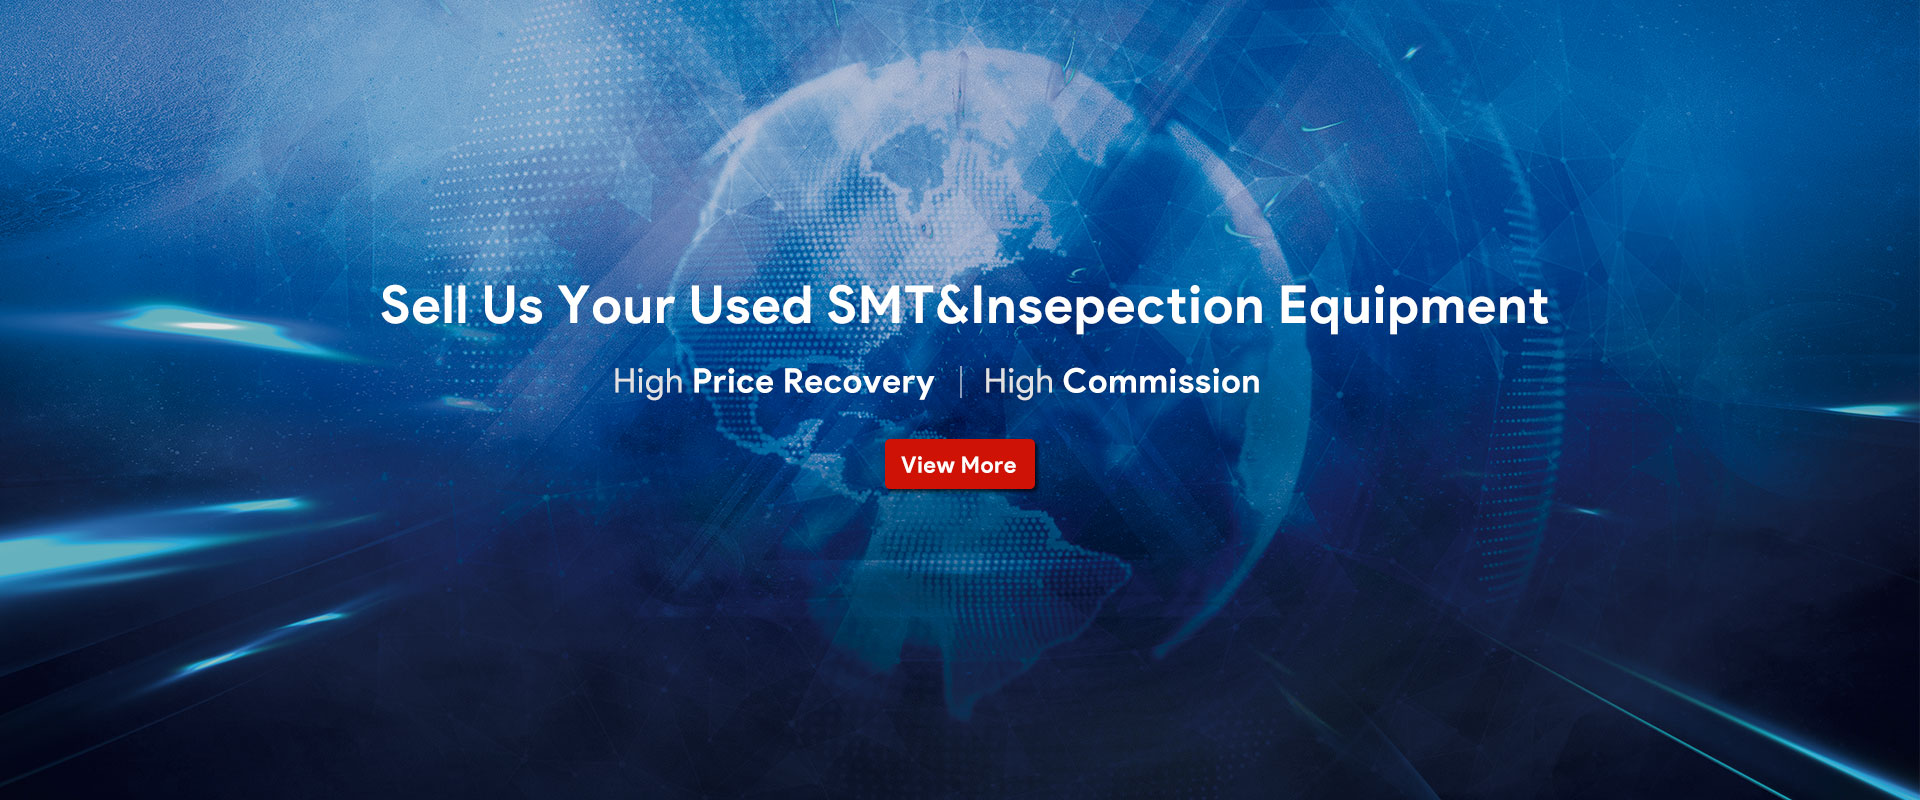 Bán cho chúng tôi thiết bị SMT &Insepection đã qua sử dụng của bạn